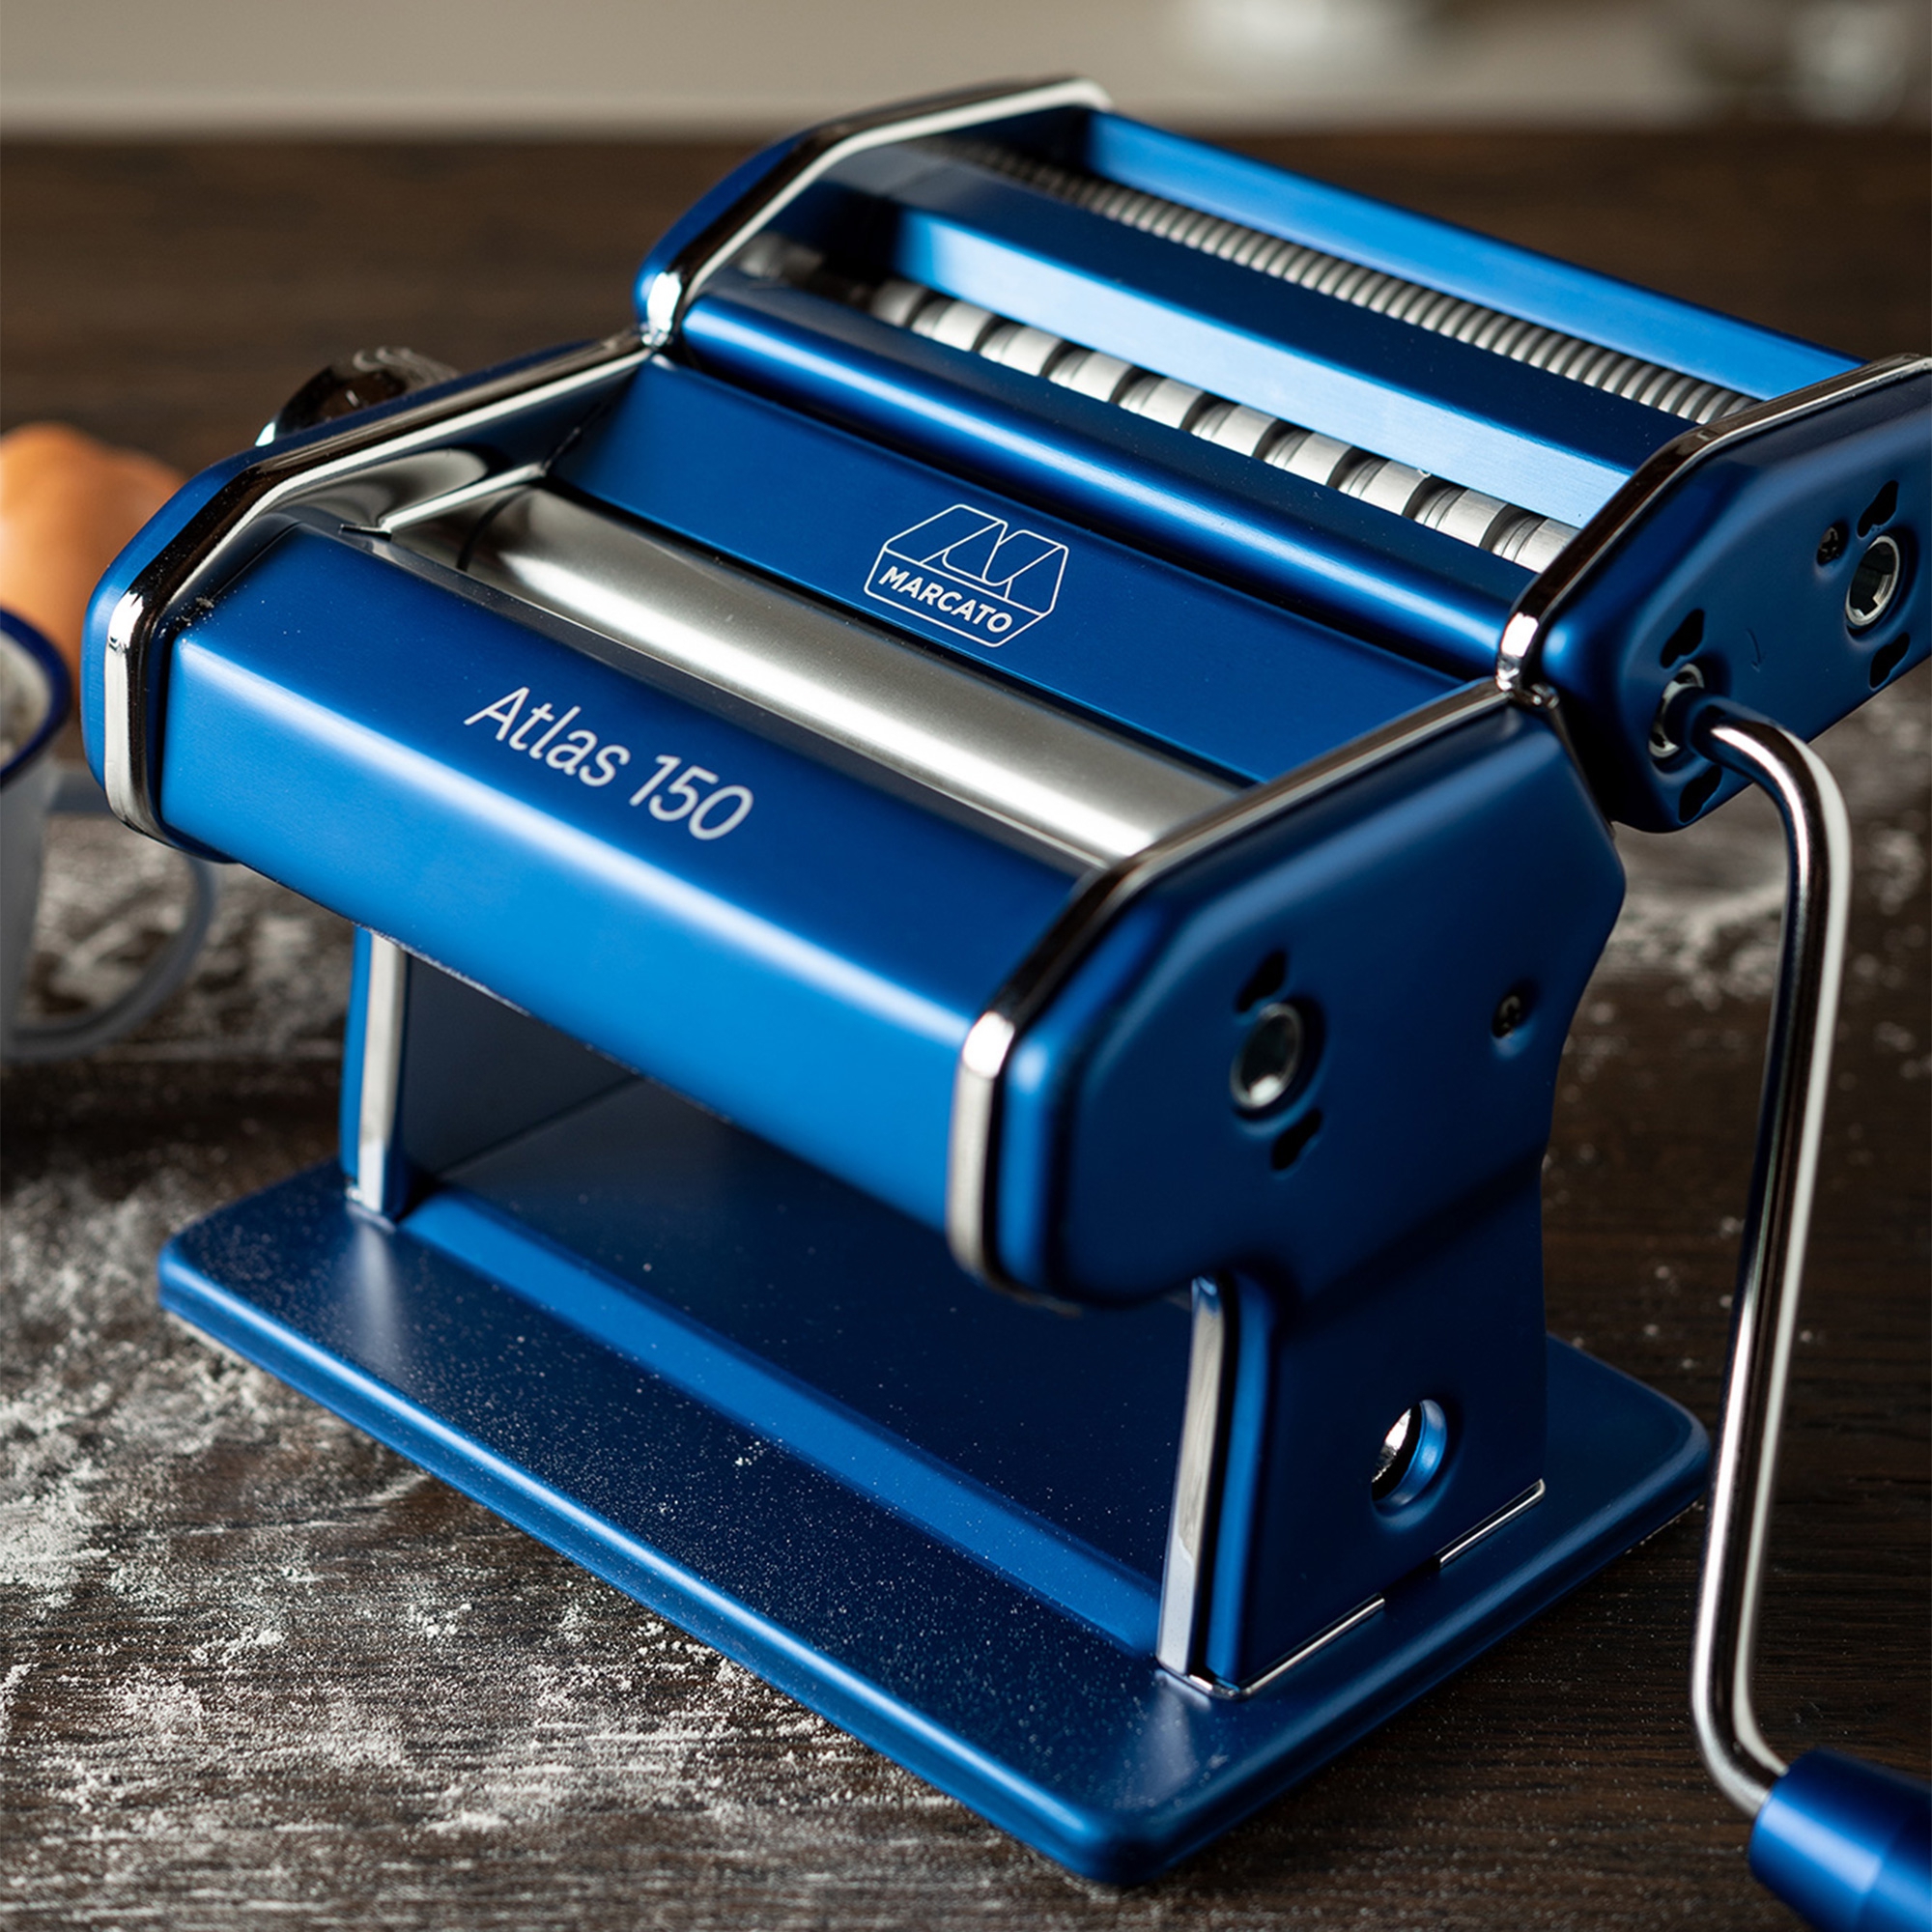 Marcato - Pasta machine "Atlas 150 Design" Blue